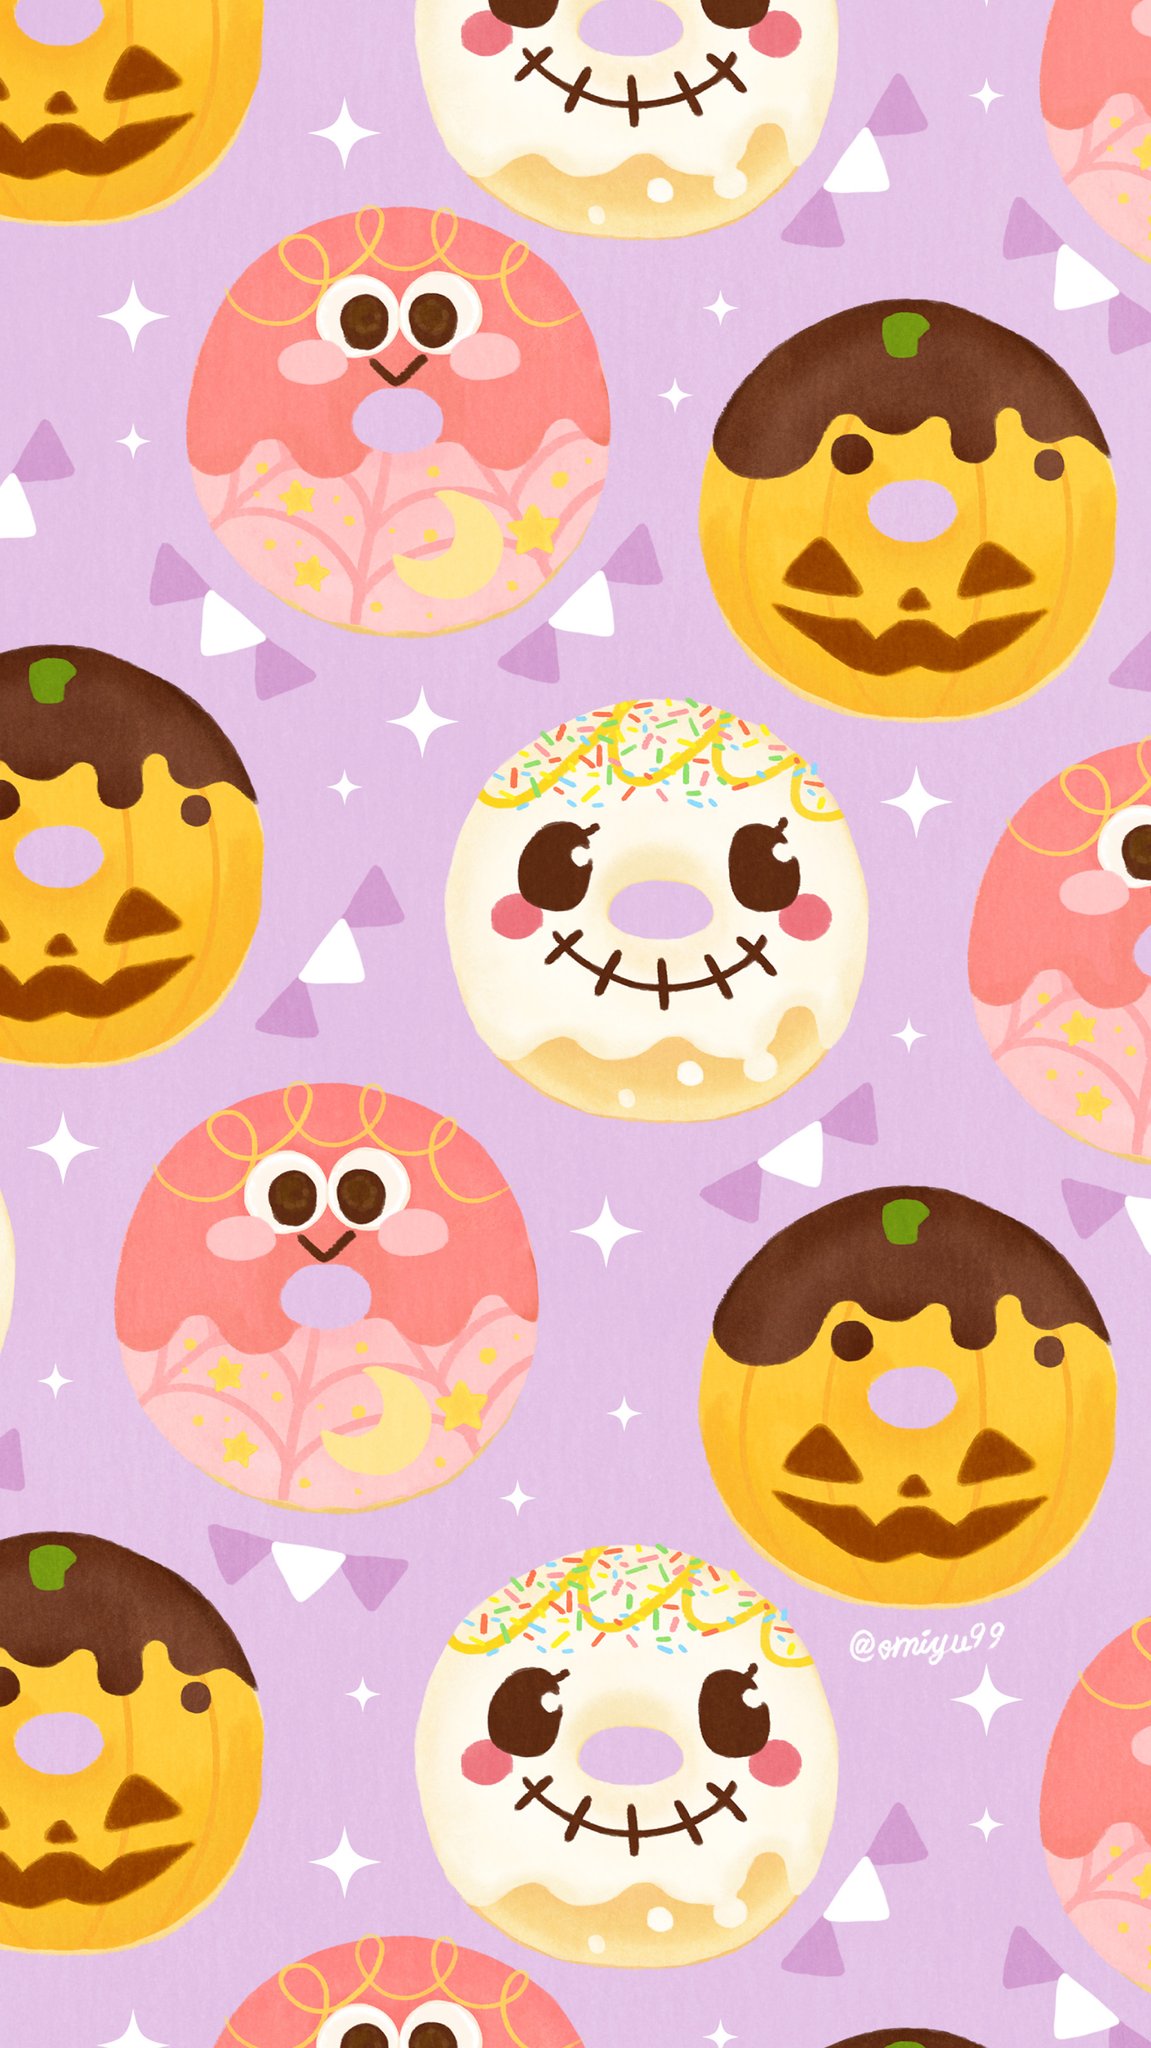 Omiyu お返事遅くなります ハロウィンなドーナツ壁紙 Illust Illustration ハロウィン Halloween ドーナツ Donuts イラスト Iphone壁紙 壁紙 食べ物